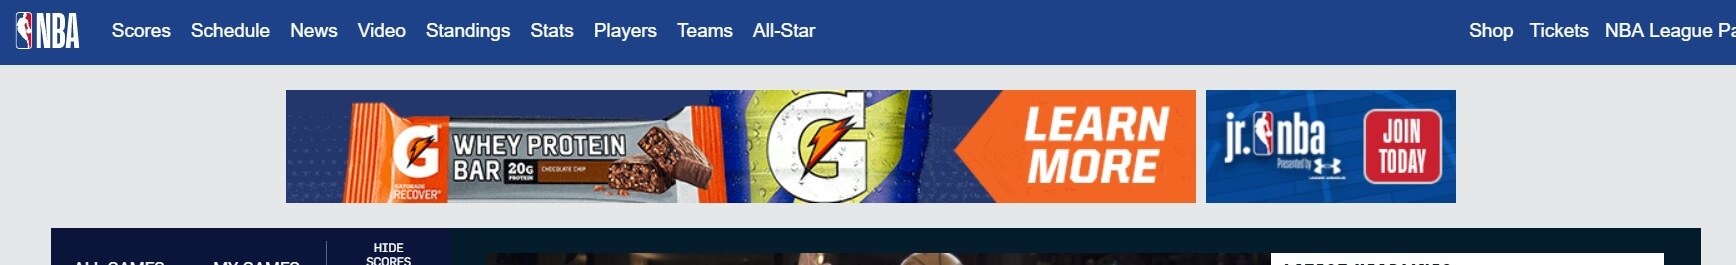 Un ejemplo de banner en la página de inicio de la NBA